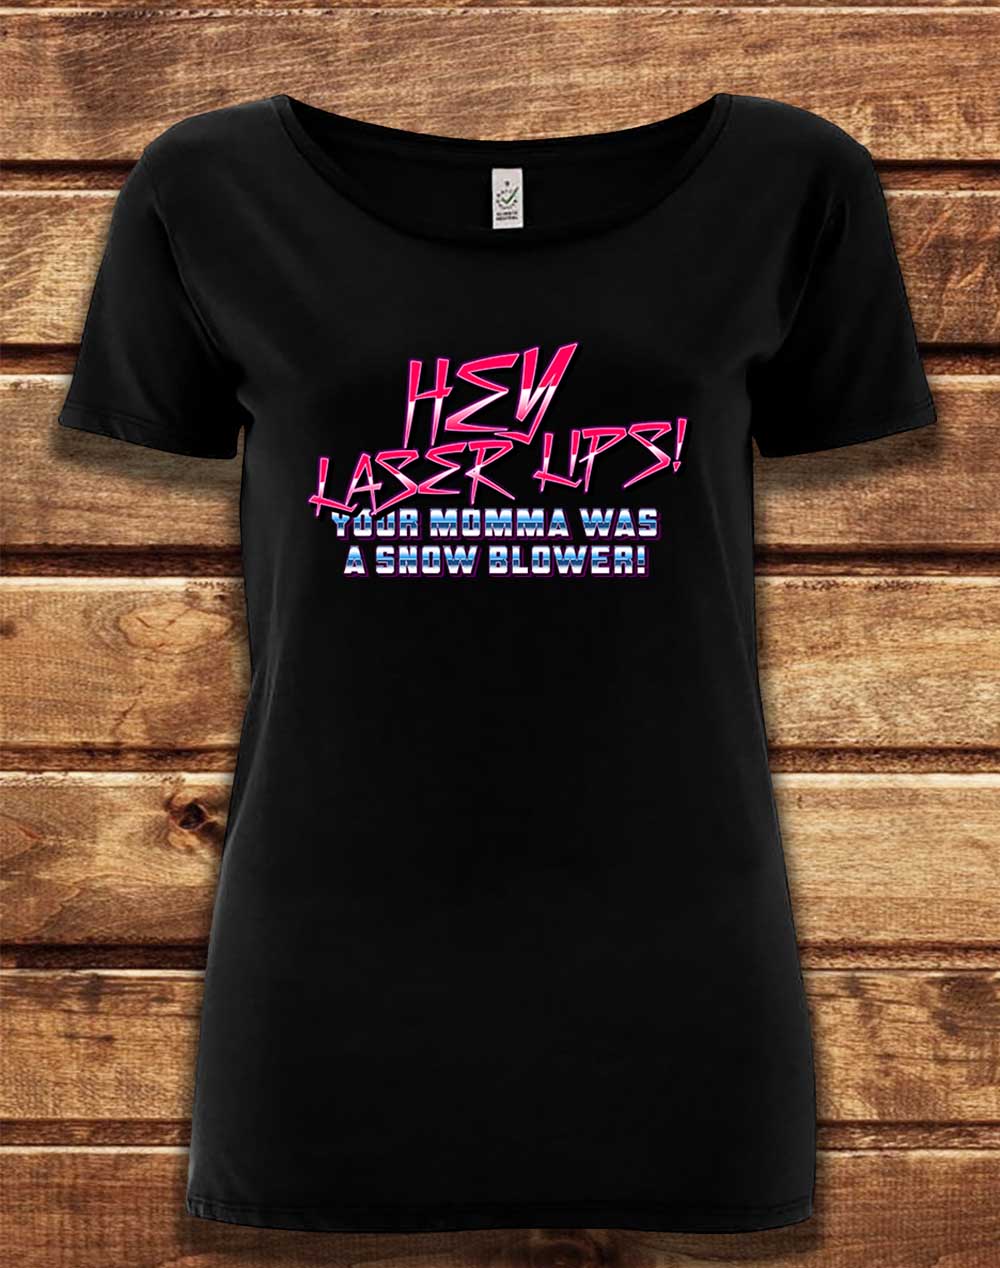 Black - DELUXE Hey Laser Lips Organic Scoop Neck T-Shirt